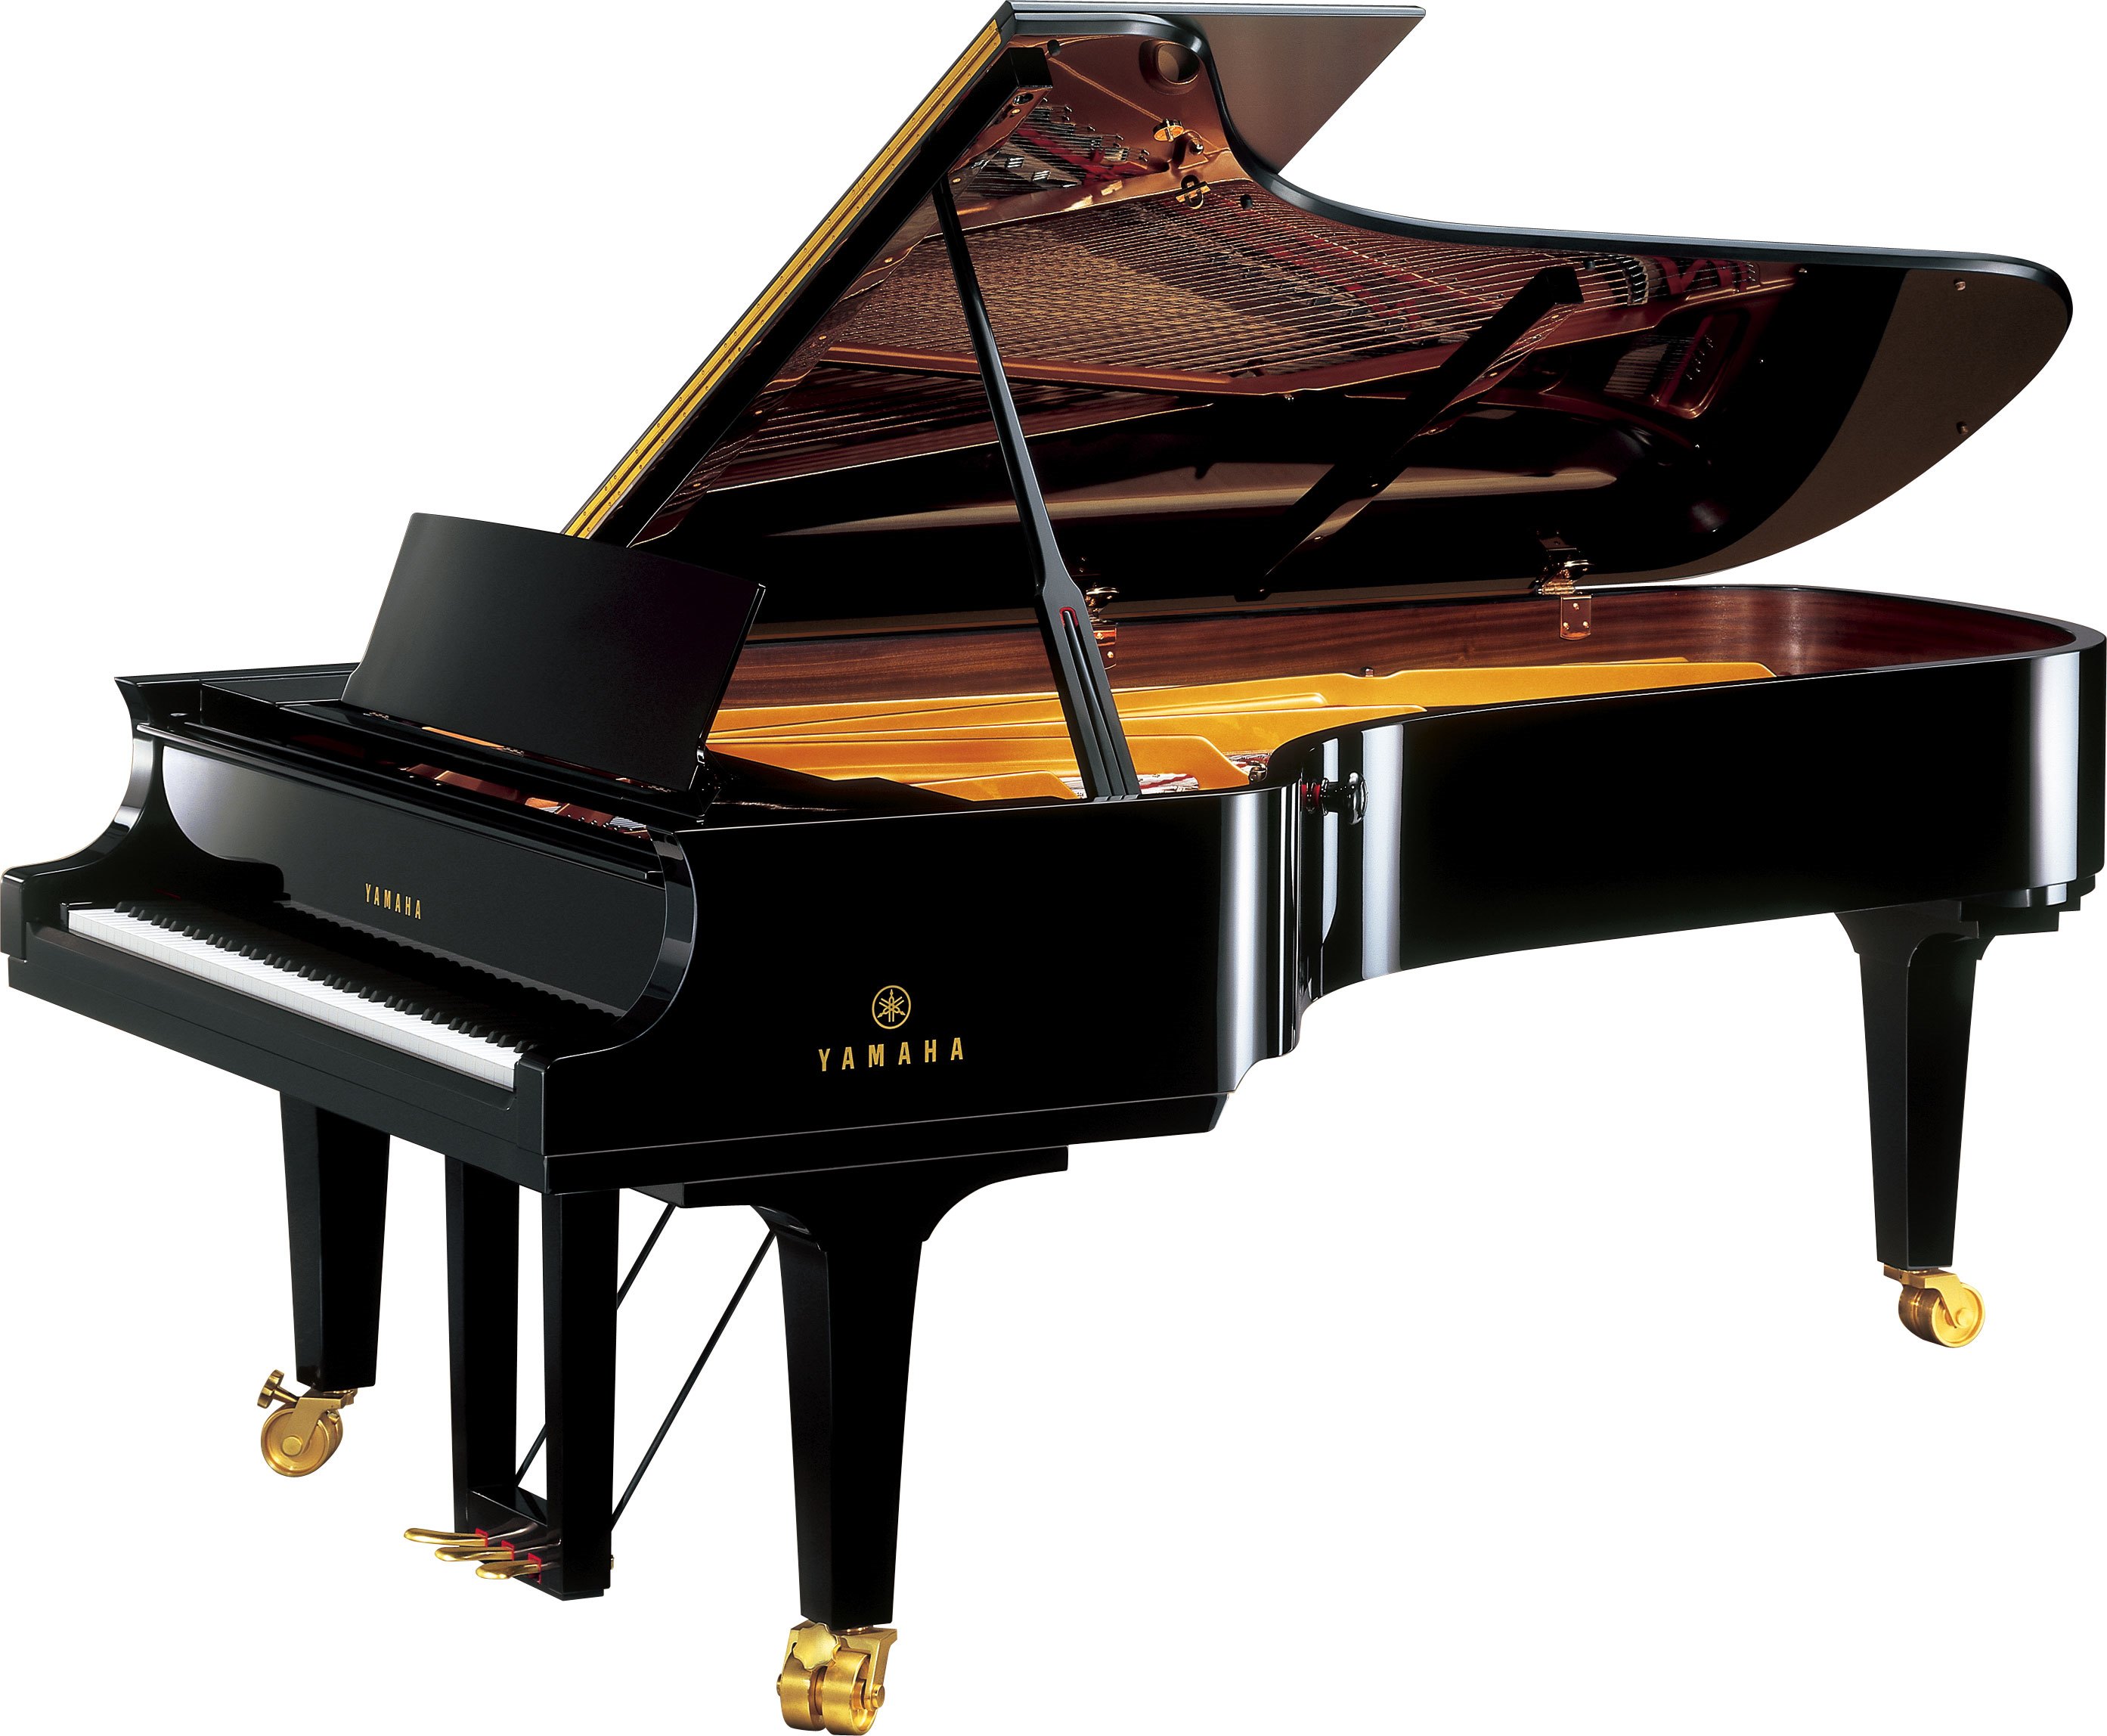 Serie CF - Descripción - Premium Pianos - Pianos - Instrumentos